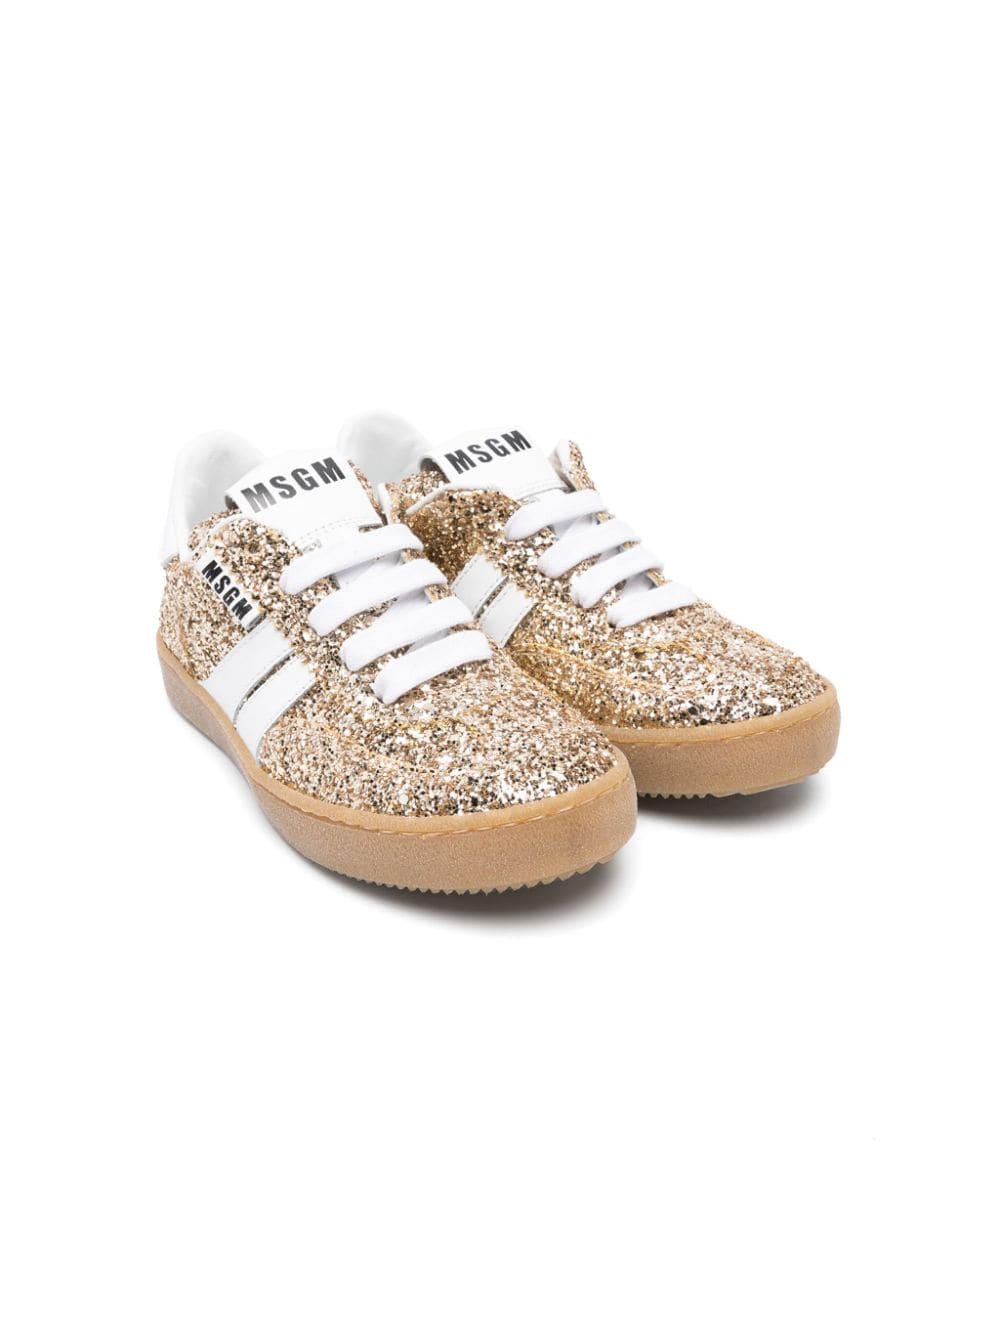 Sneakers Retro con glitter<BR/> - Rubino Kids